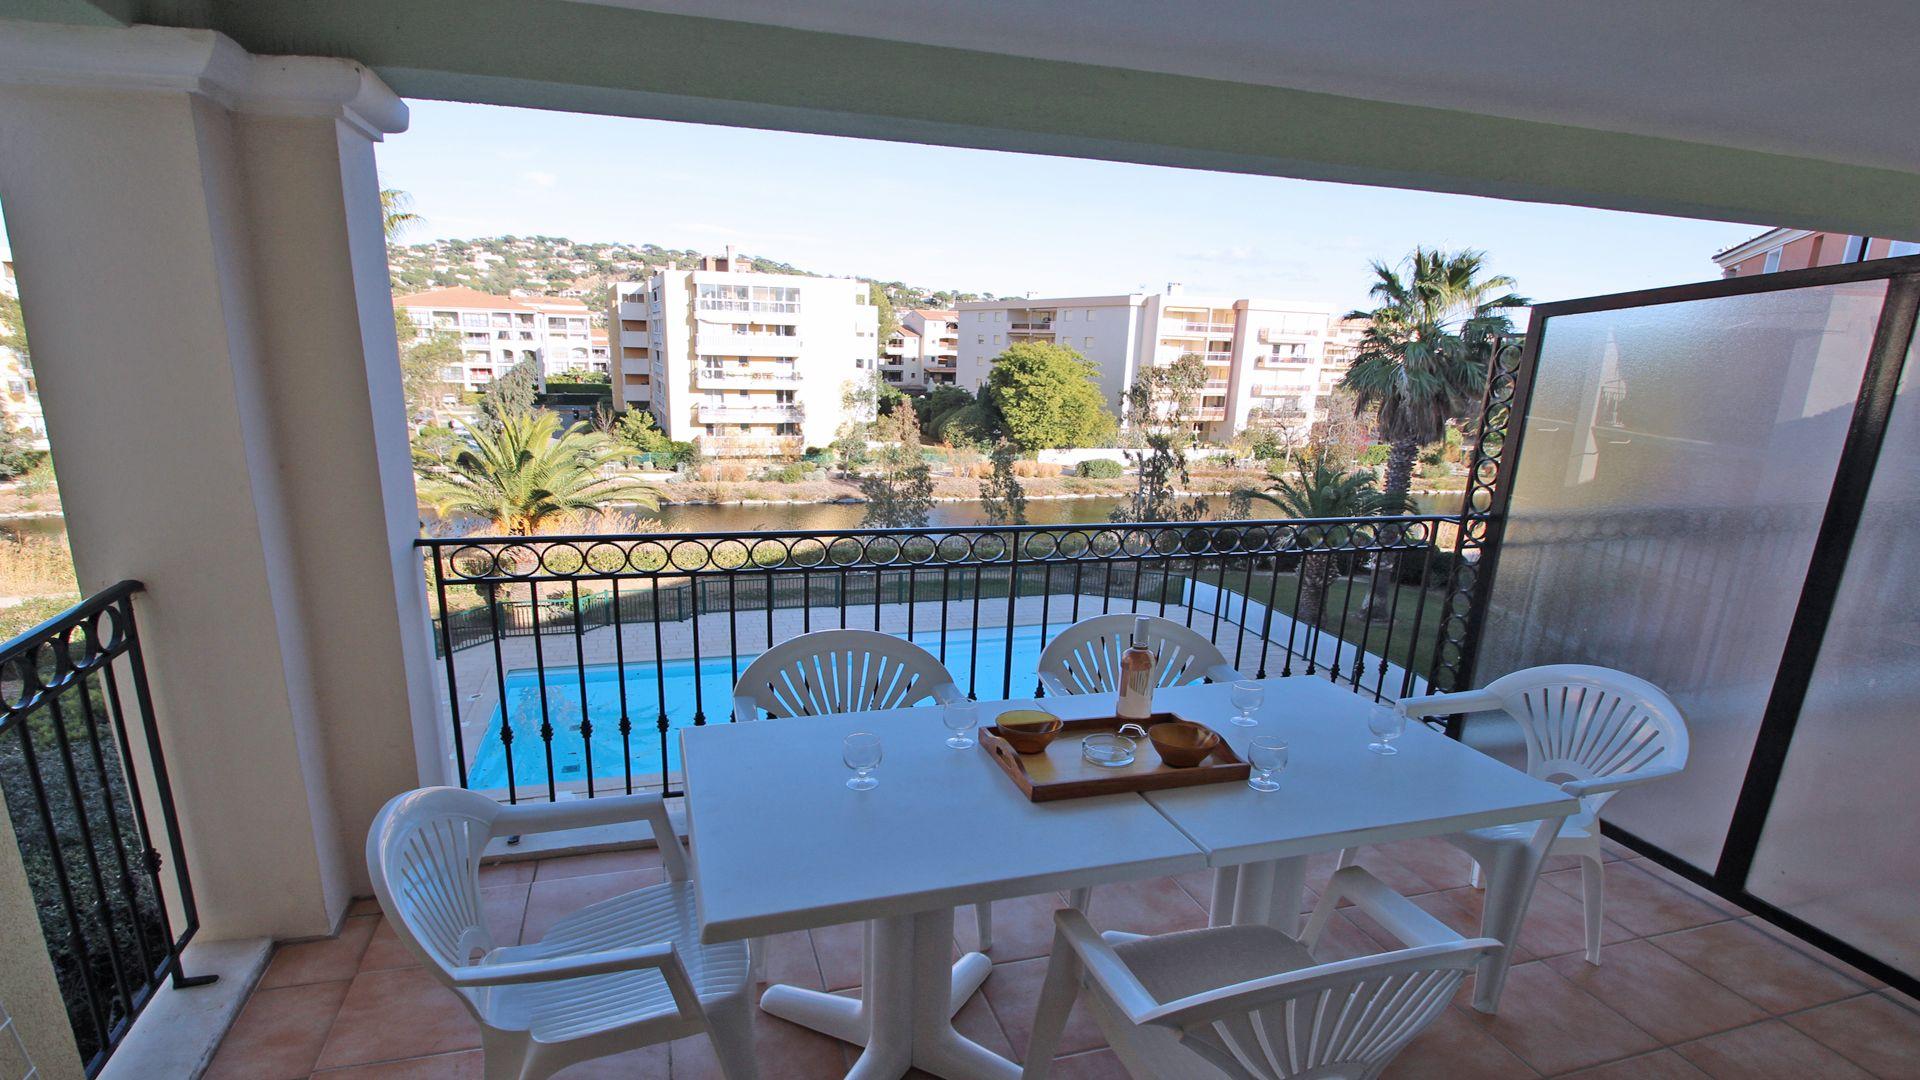 Ferienwohnung für 4 Personen ca. 45 m² i Ferienwohnung  Côte d'Azur